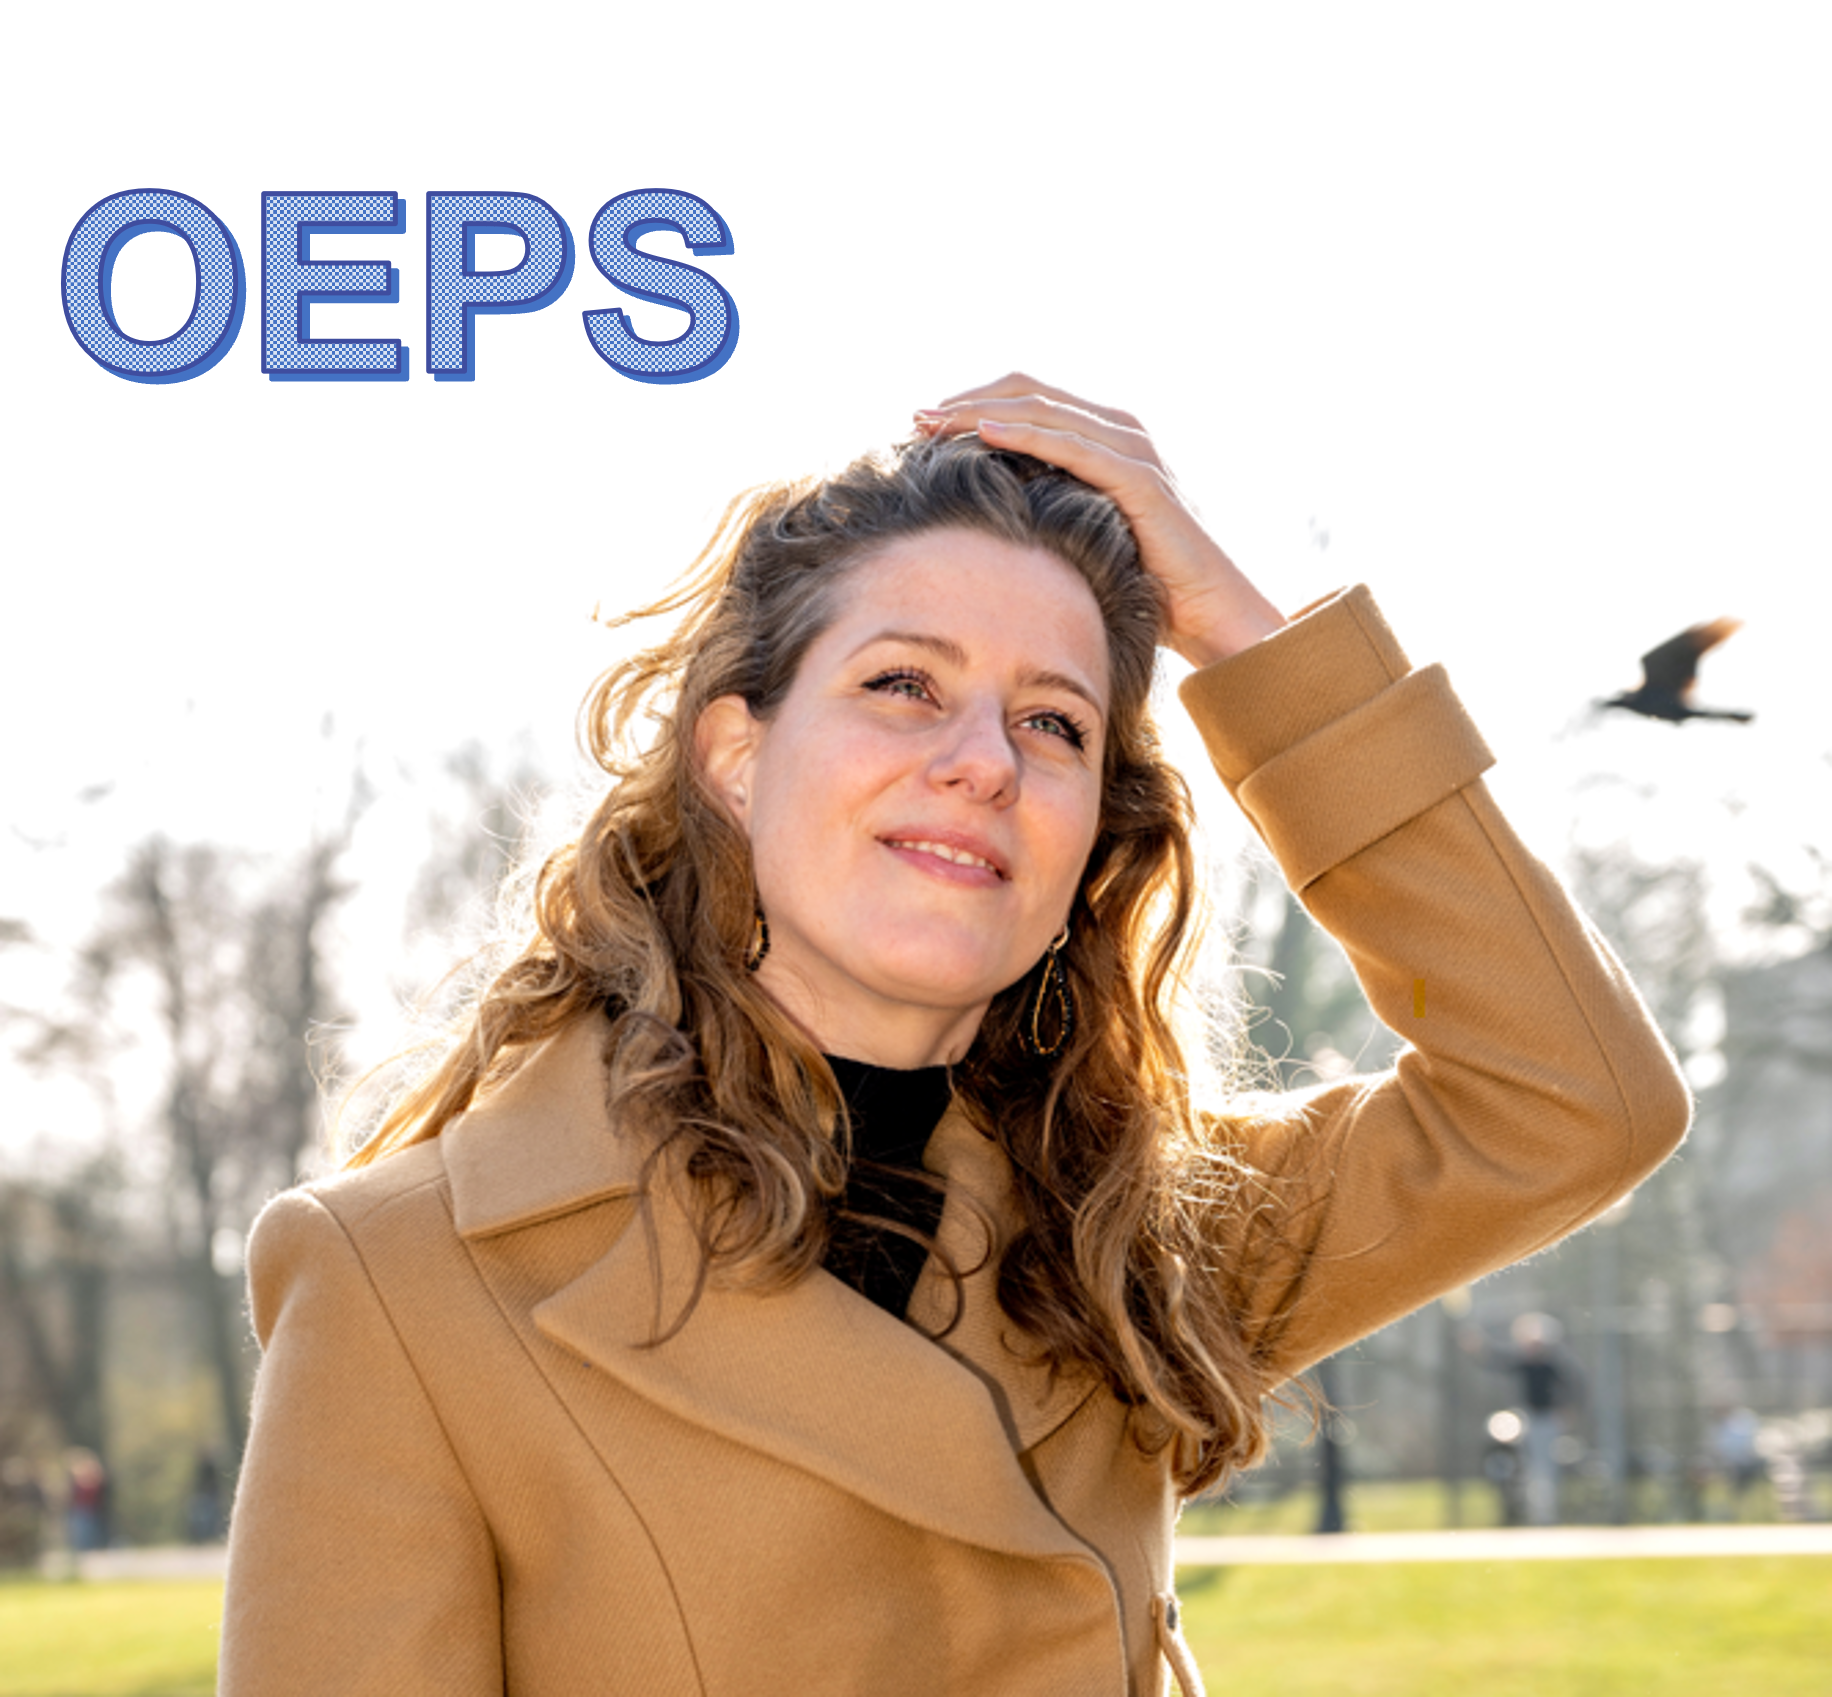 OEPS – hoe geef je feedback